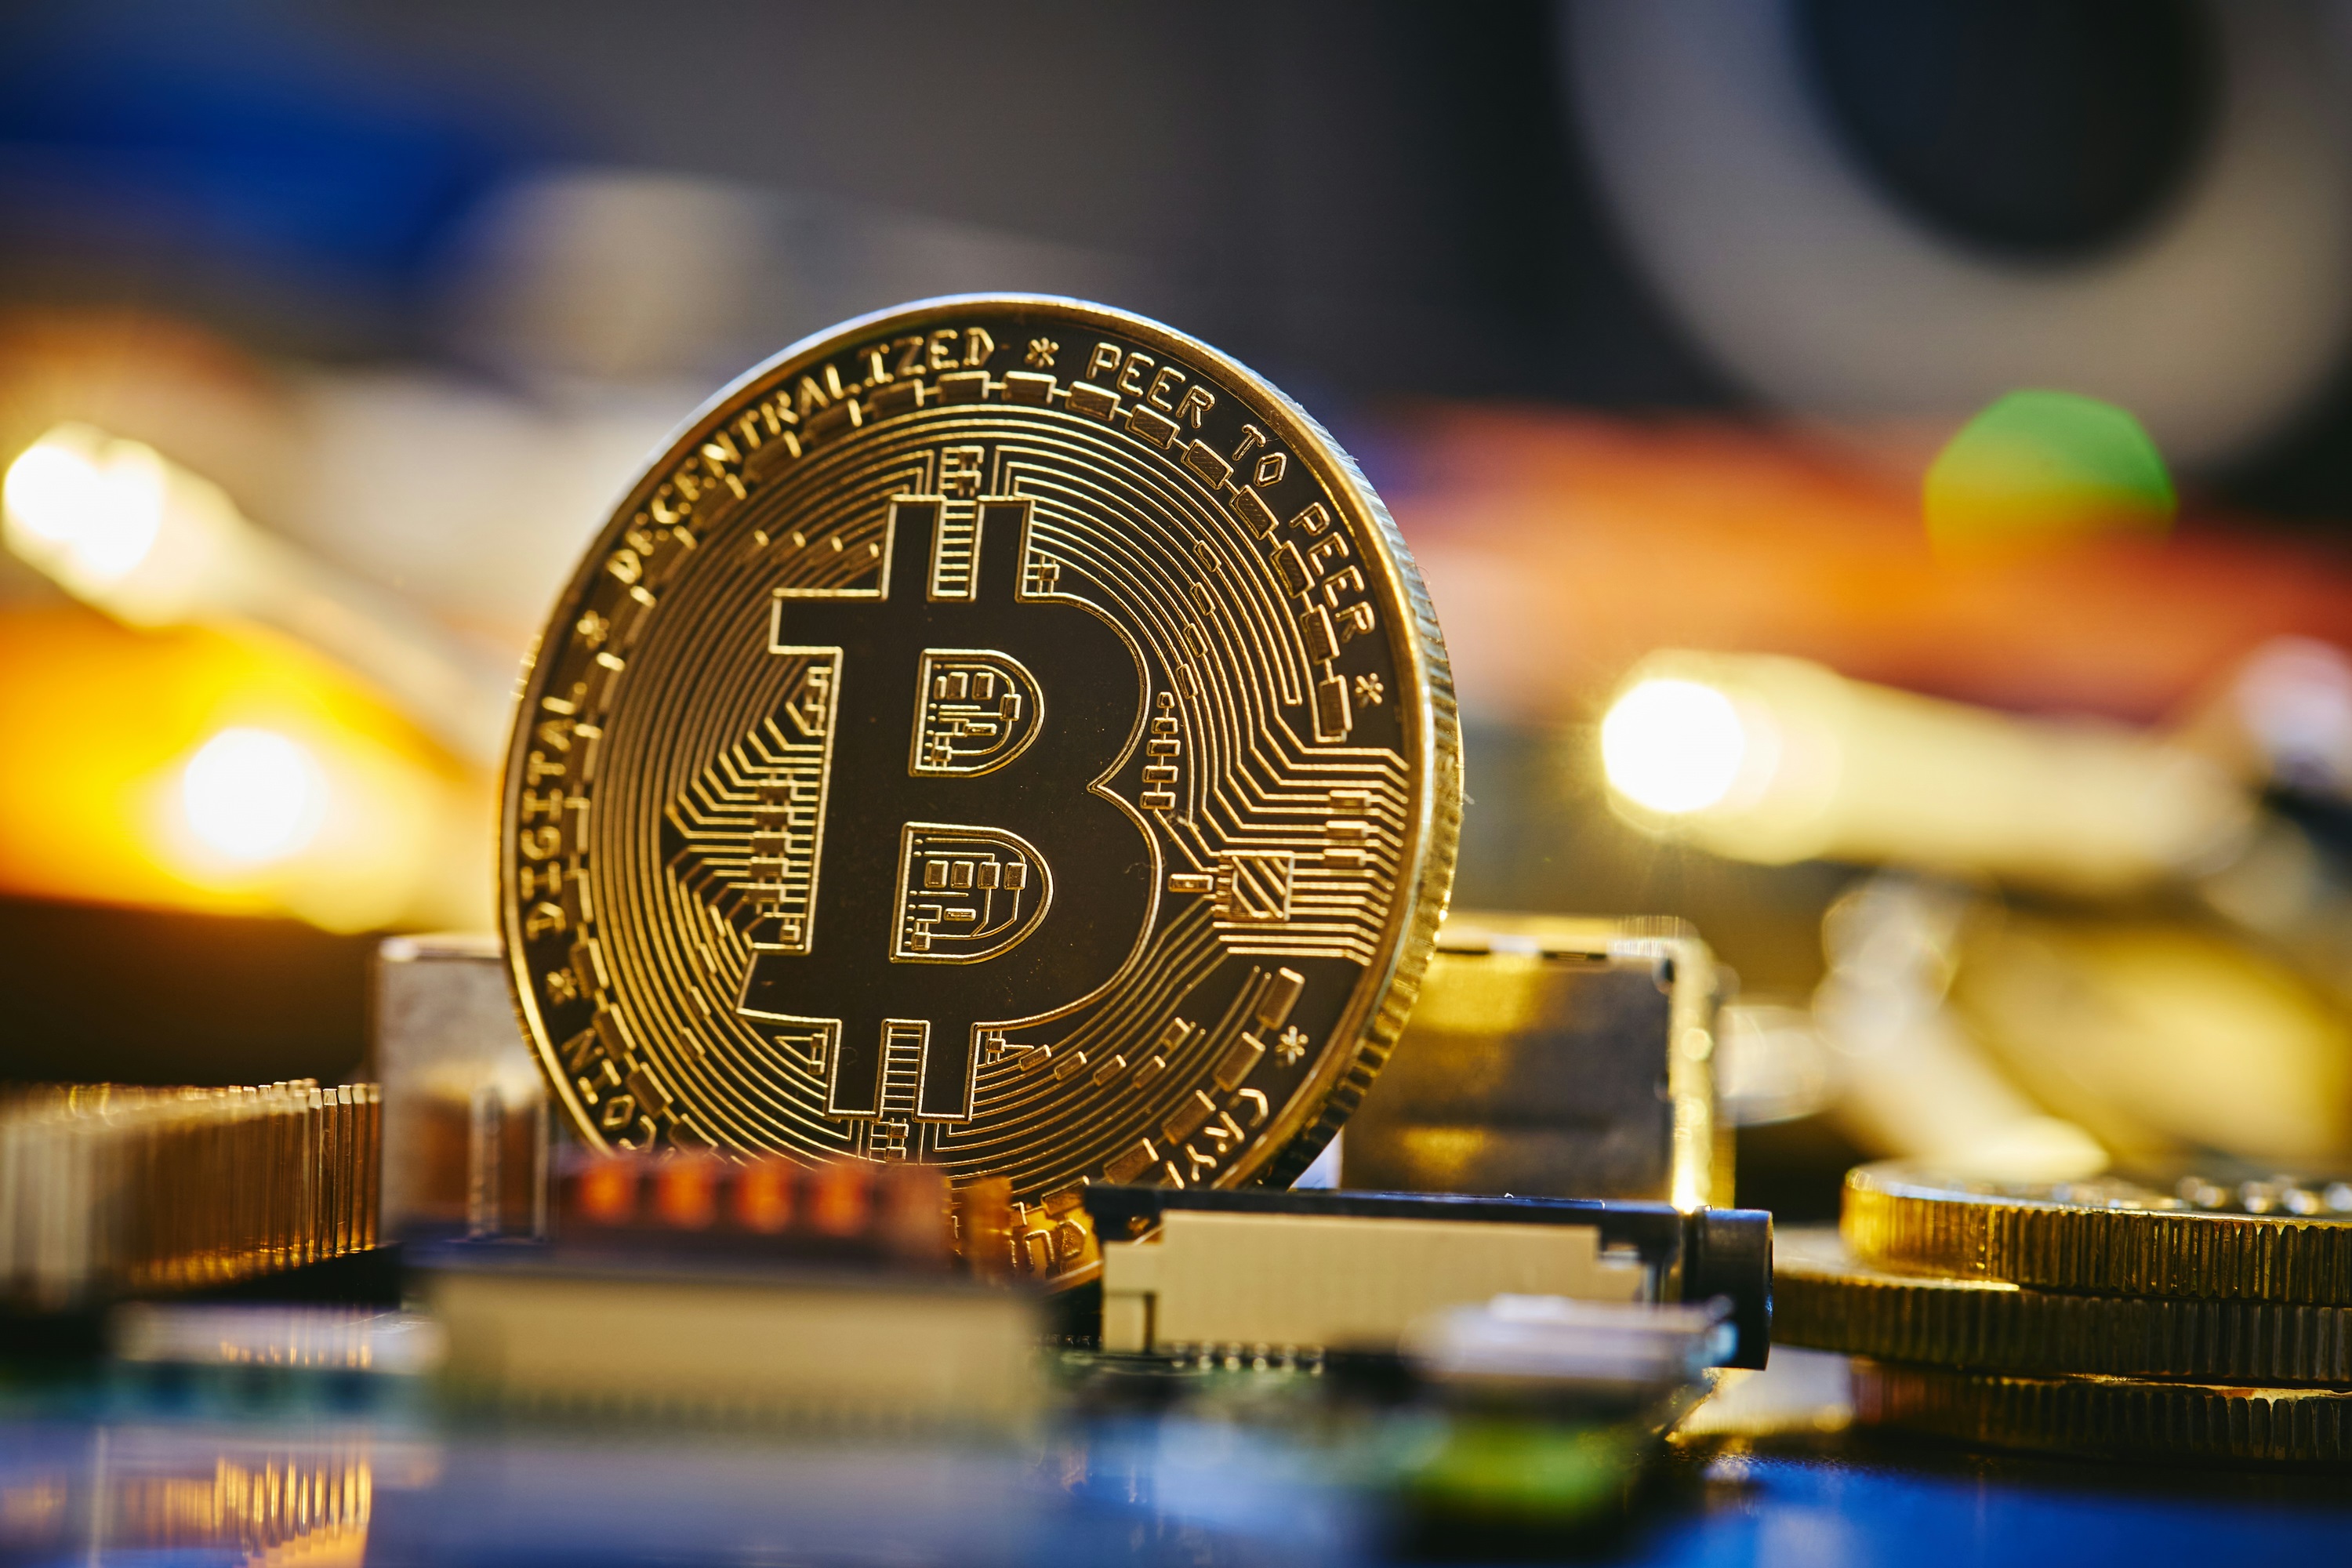 Bitcoin HODLing: Weak Hands Not Capitulating Despite Crash